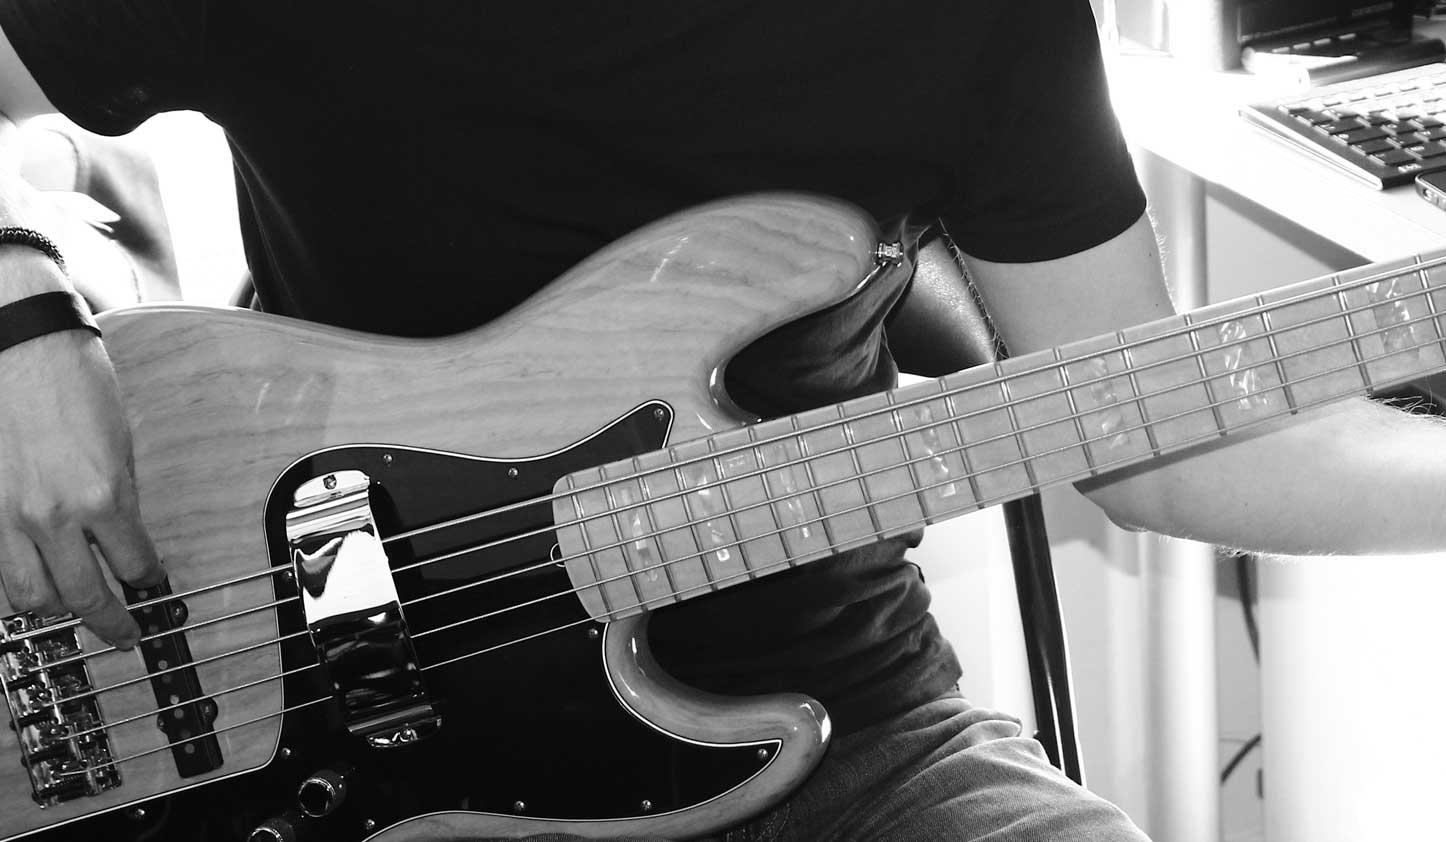 Bass close up view